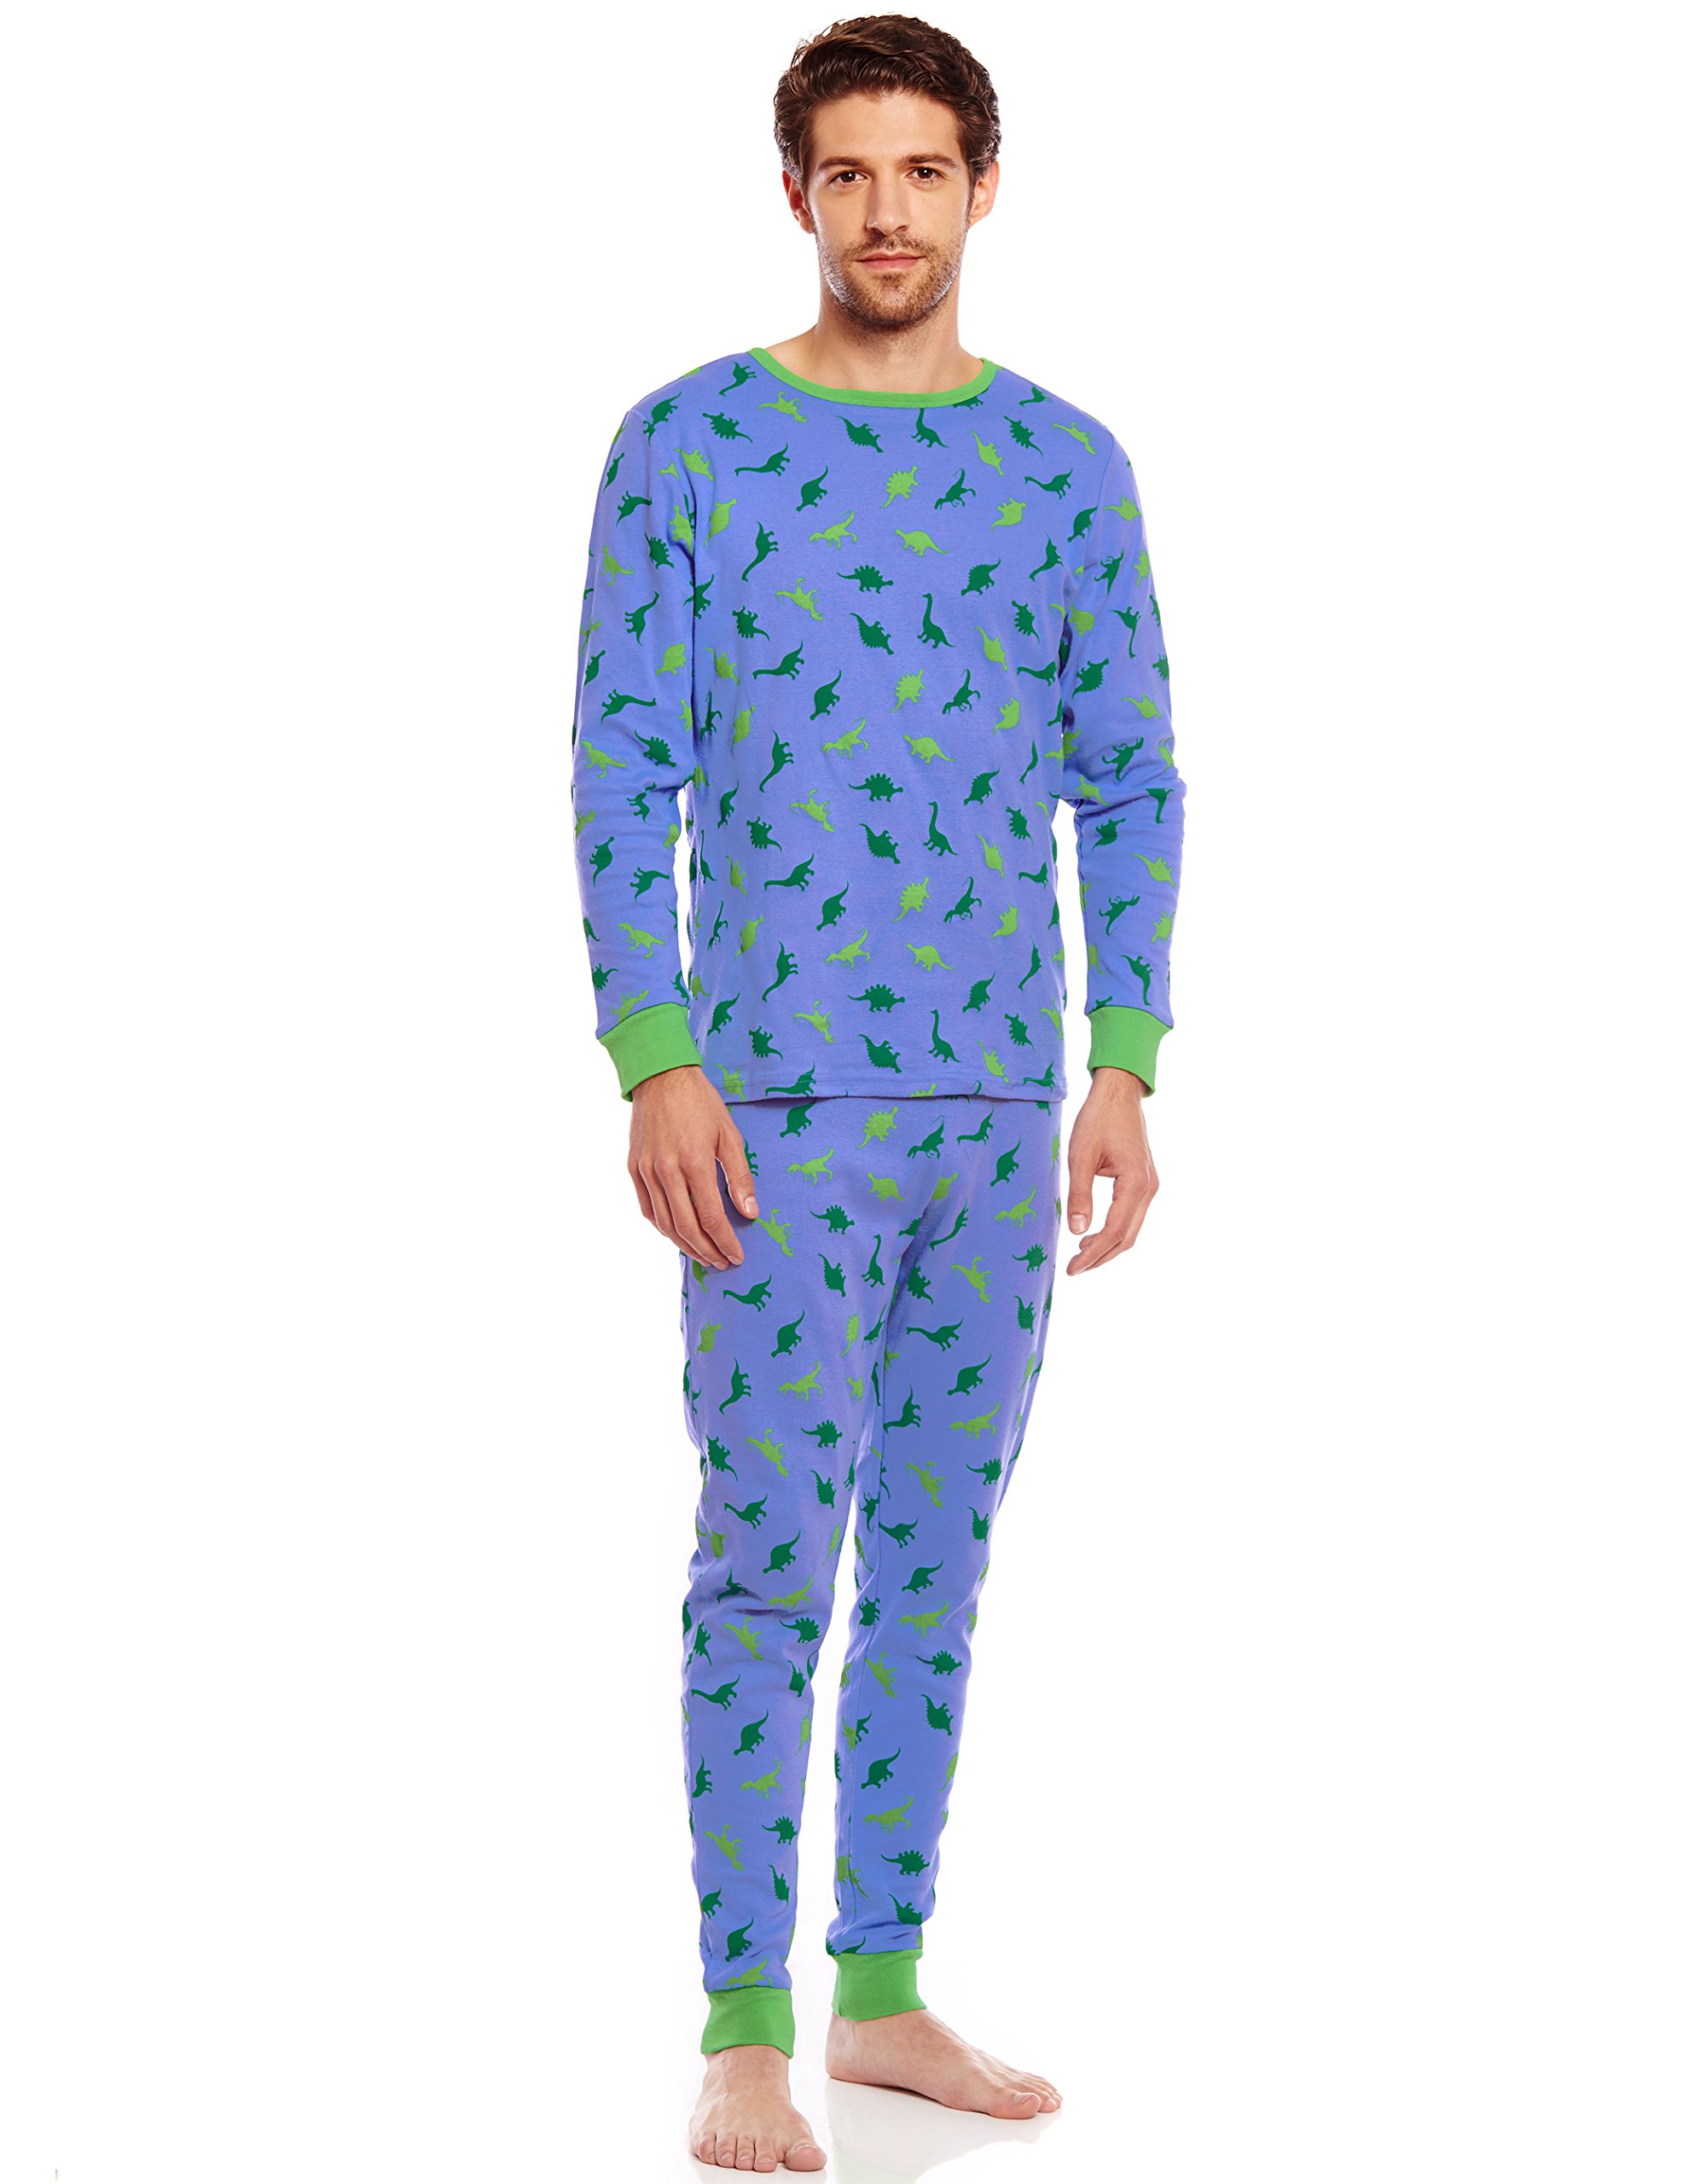 Leveret Men's Pajamas Fitted 2 Piece Pj's Set 100% Cotton Sleep Pants ...